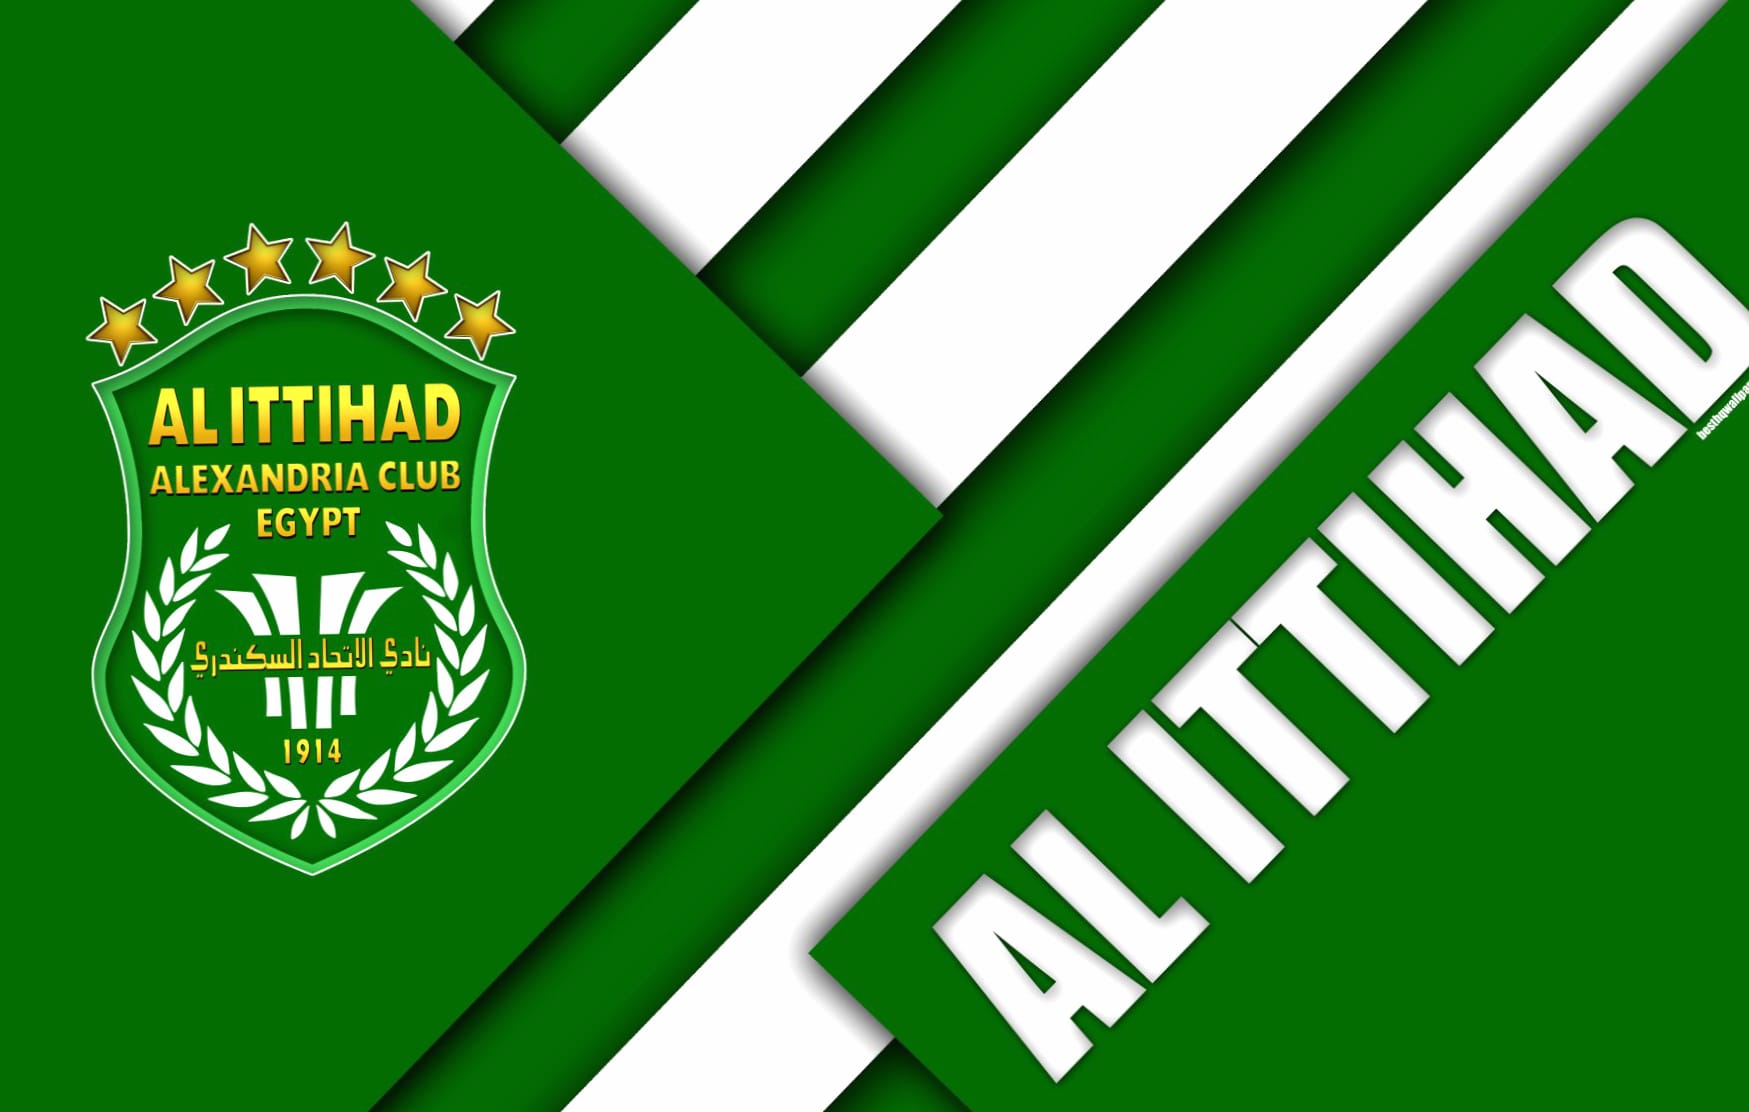 Al Ittihad Alexandria Club at 1024 x 1024 iPad size wallpapers HD quality